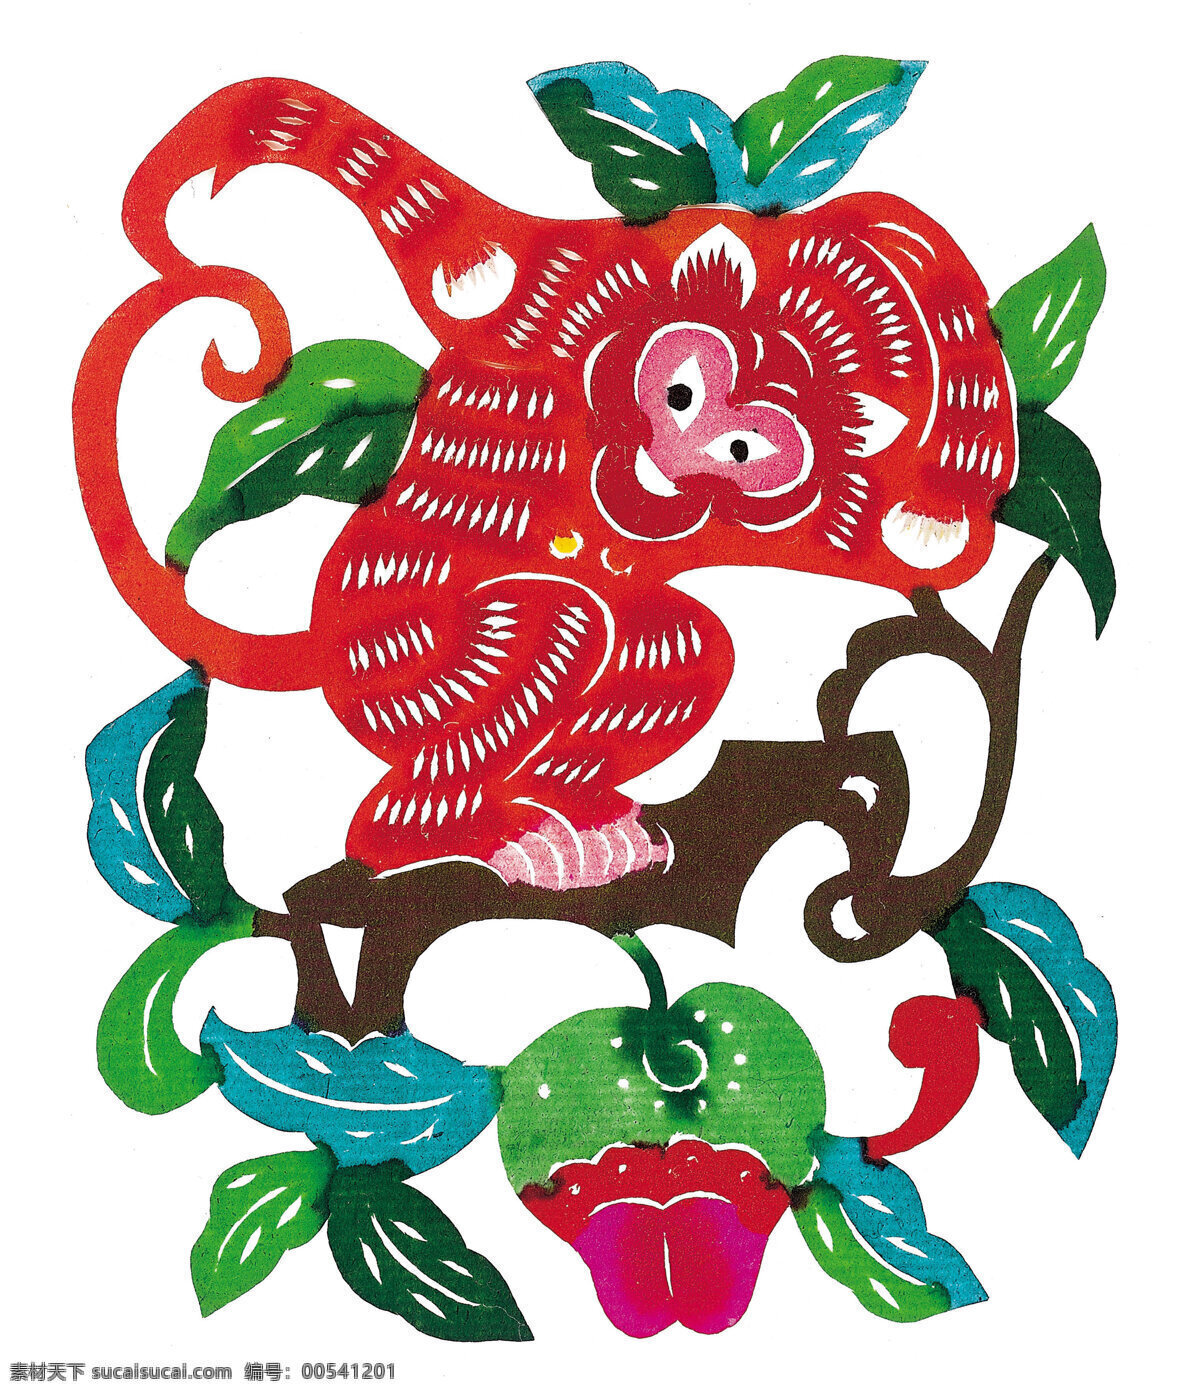 吉祥 图案 传统文化 吉祥图案 剪纸 贴画 中国风 文化艺术